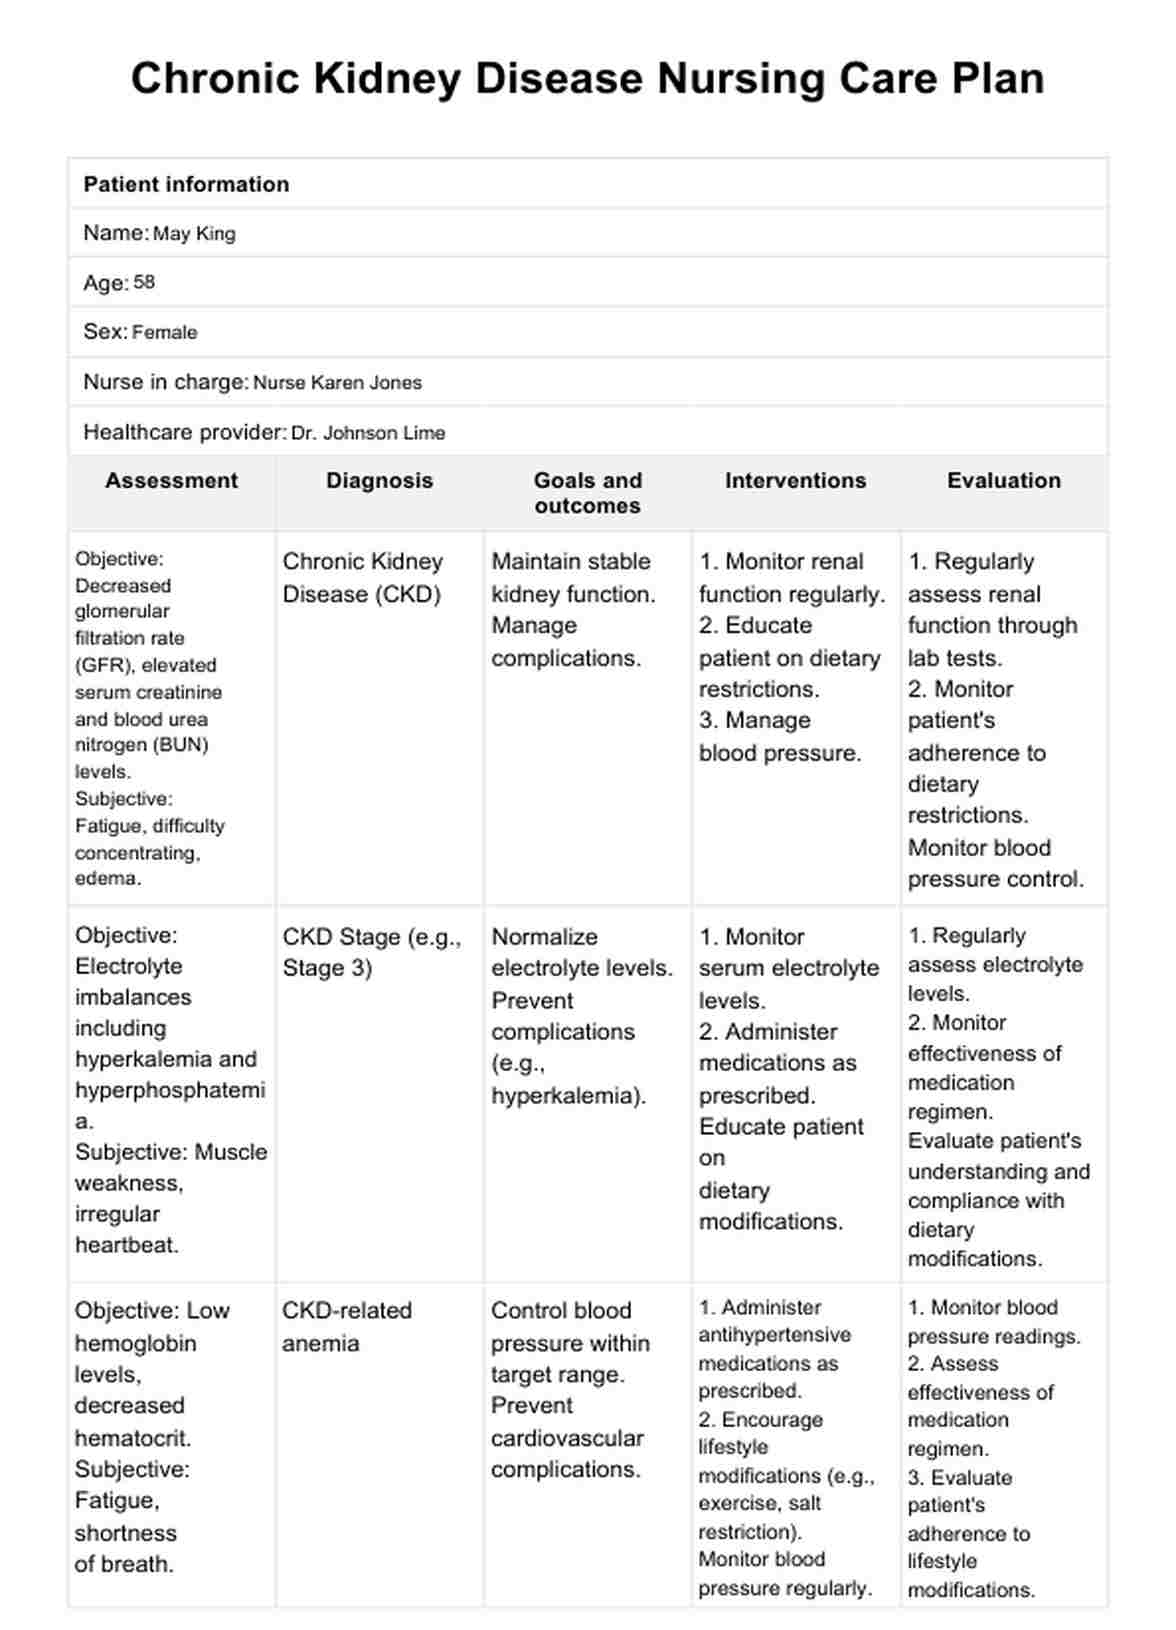 Chronic Kidney Disease Nursing Care Plan PDF Example